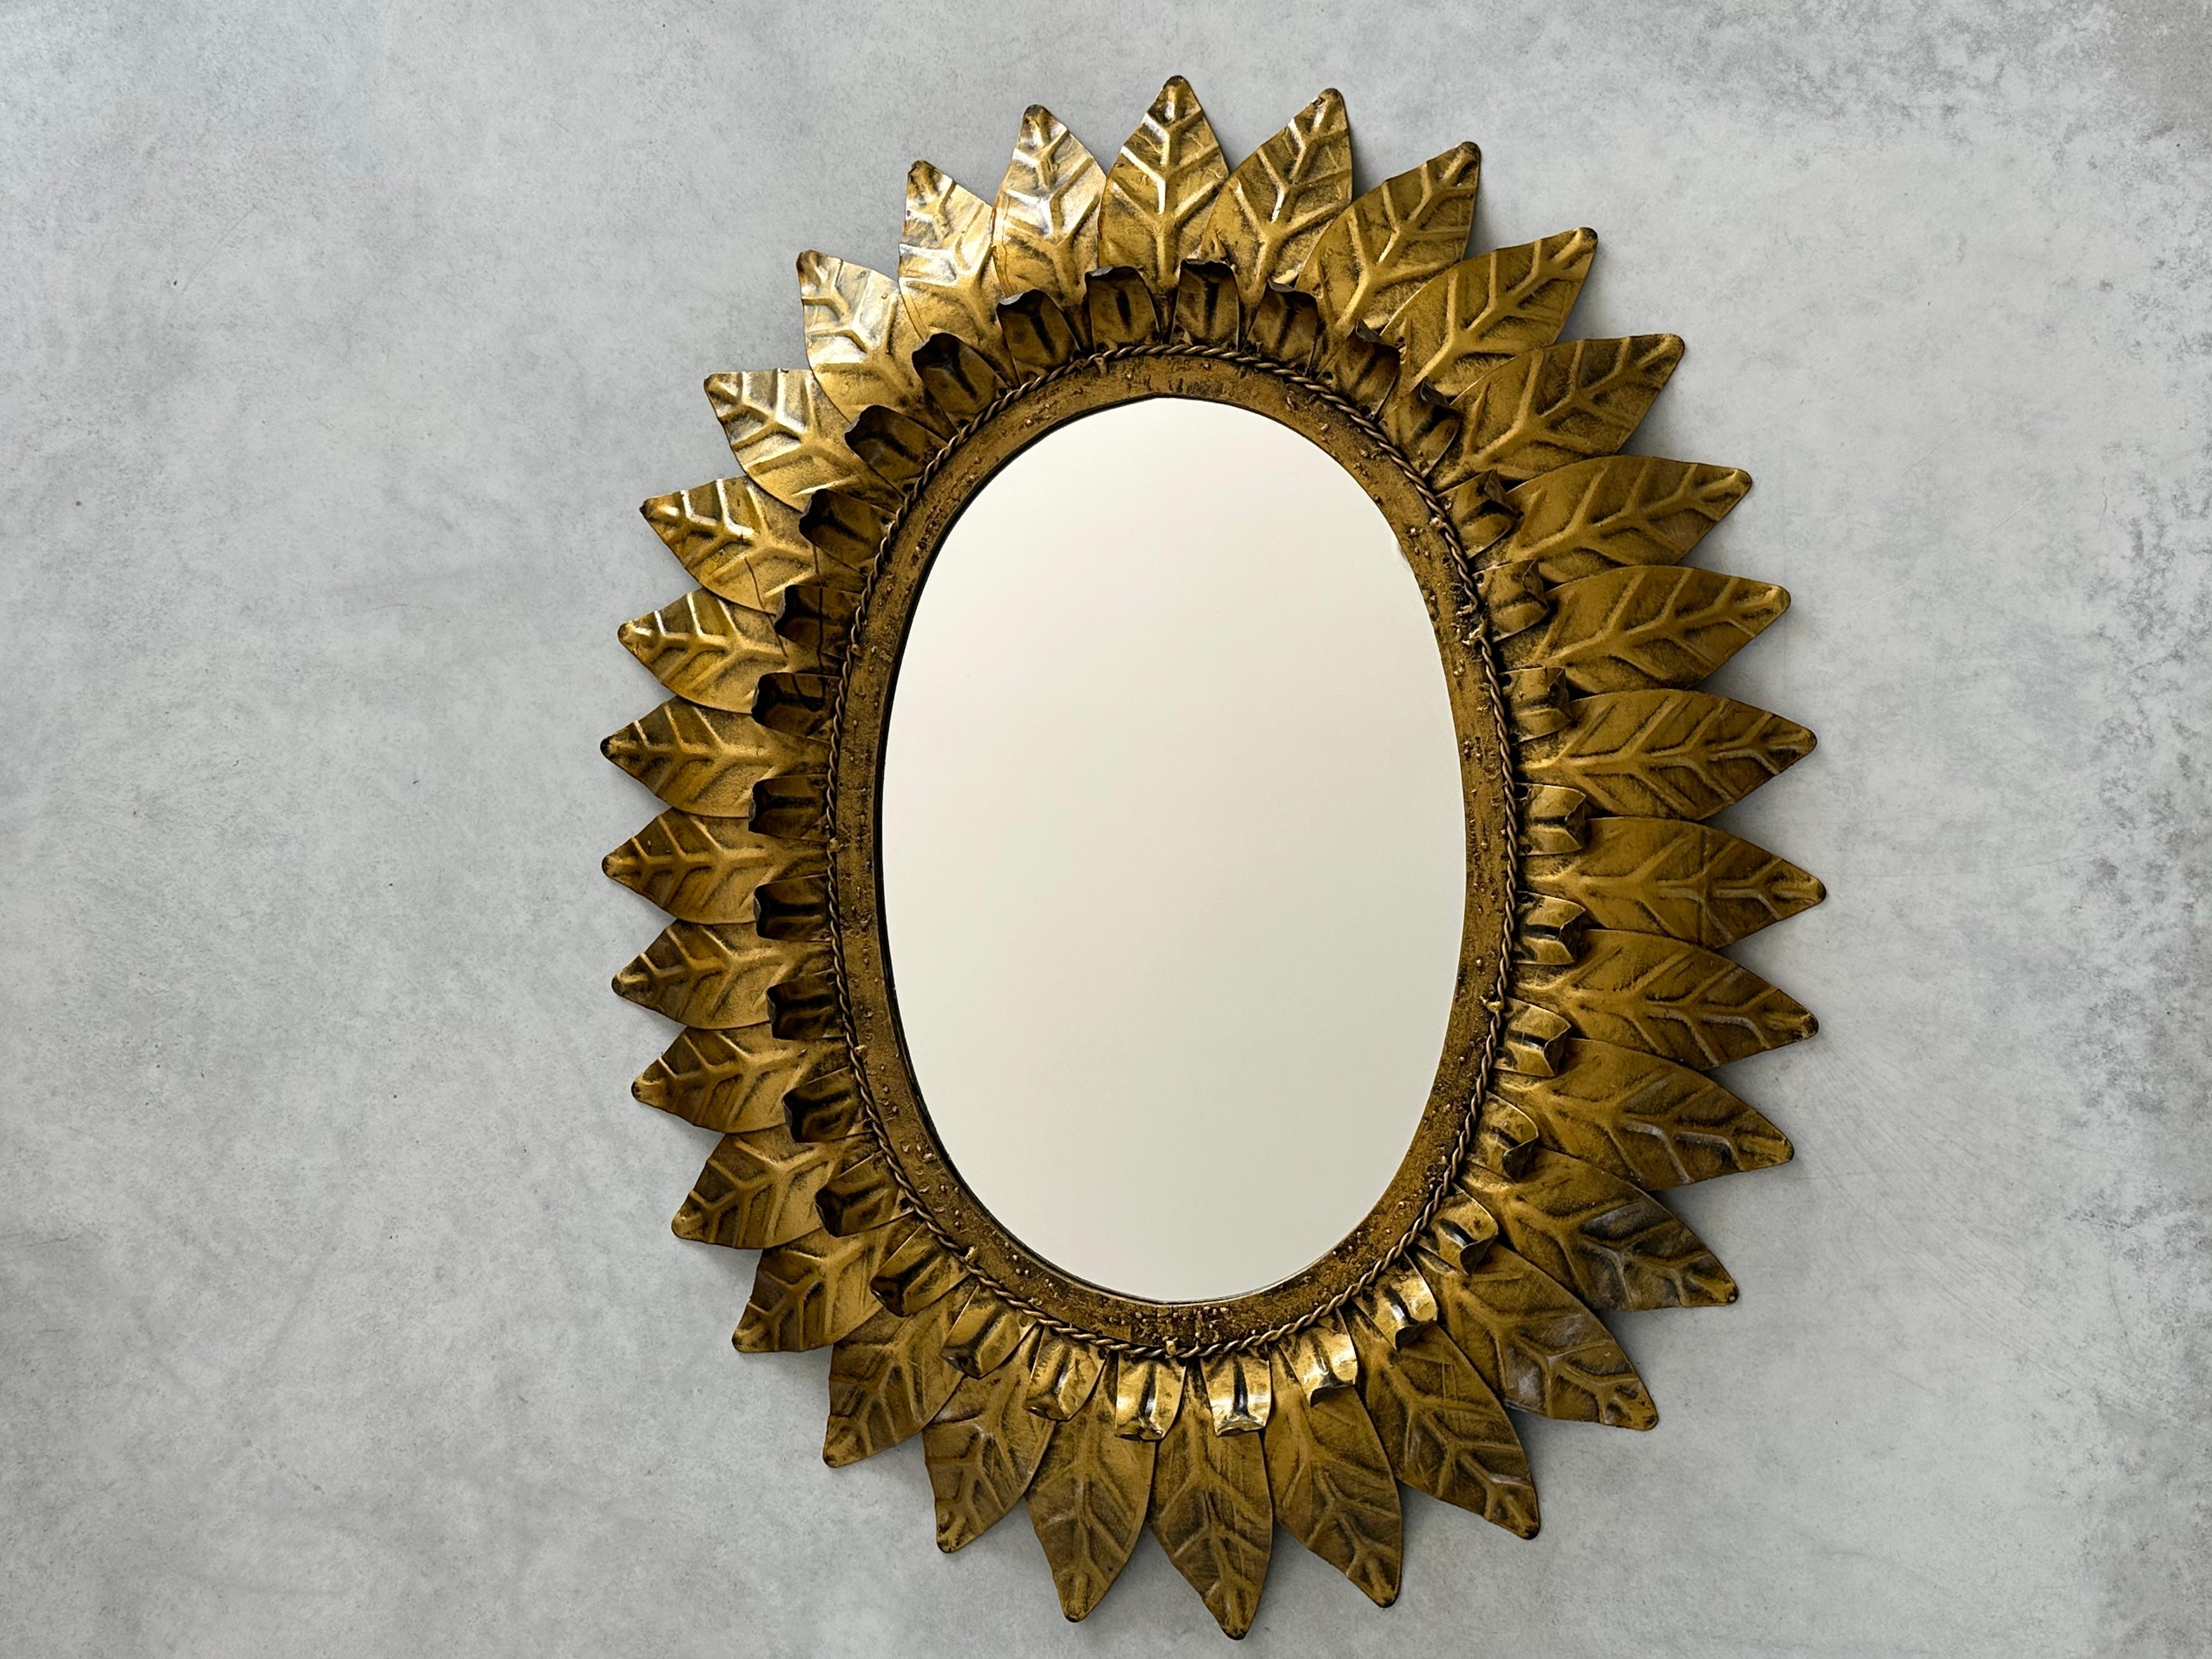 Bigli Sonnenschliffspiegel aus goldfarbenem Metall, umrahmt mit goldfarbenen Blättern.

Dieser hochdekorative ovale Sonnenschliffspiegel ist mit eleganten geschwungenen Blättern in zwei Größen umrahmt.

Dieser Spiegel ist in ausgezeichnetem